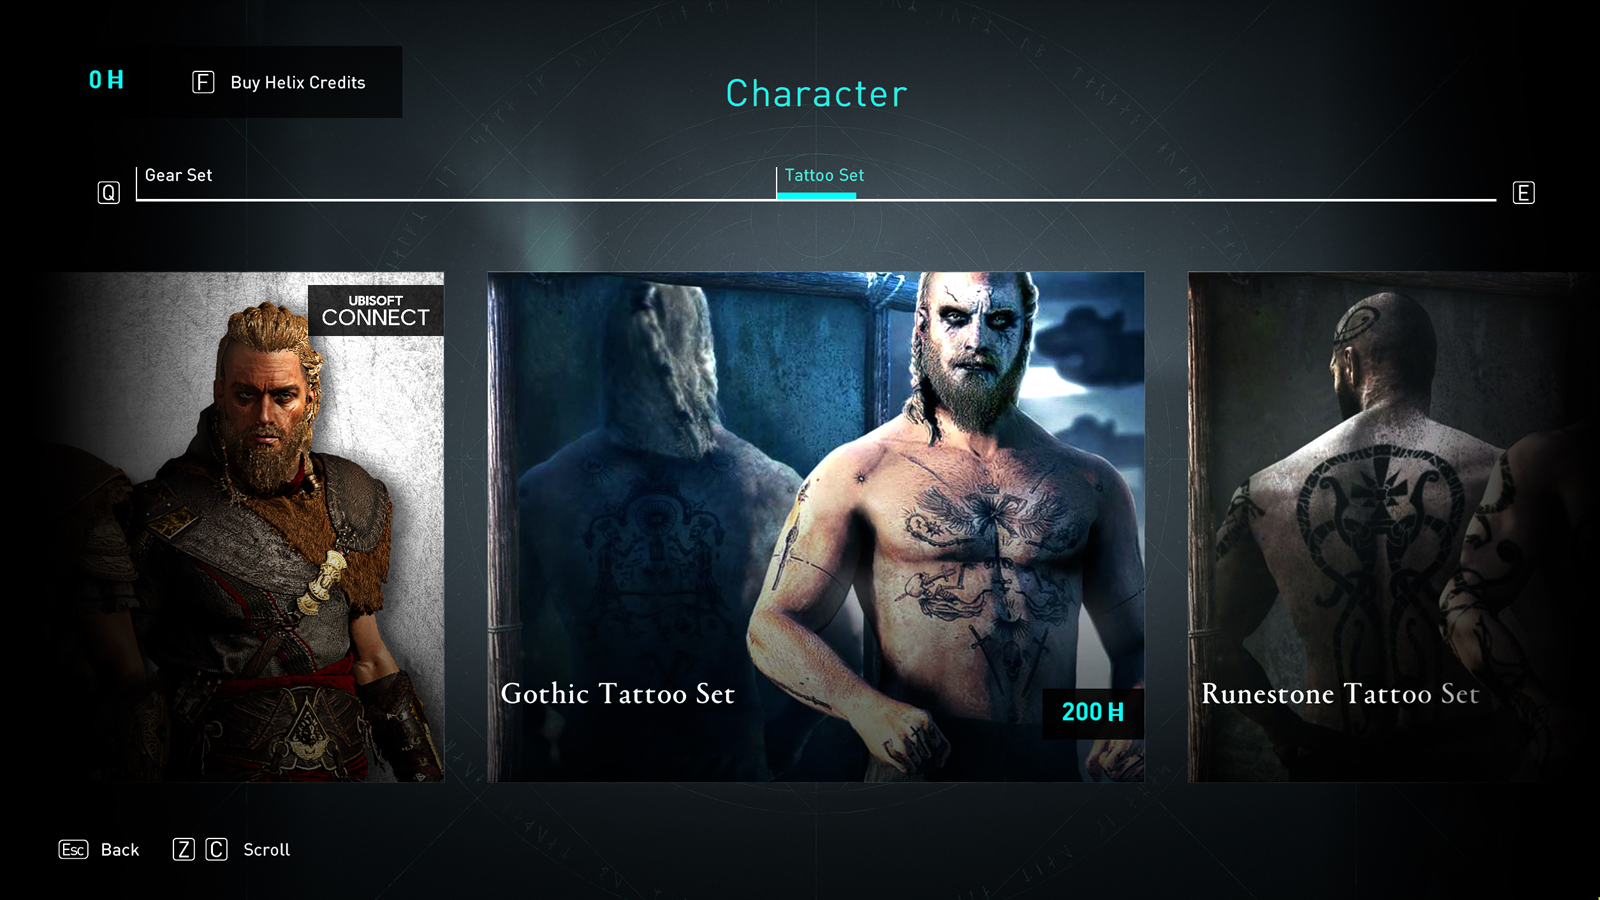 Set di tatuaggi gotici nel negozio Ubisoft di Assassin's Creed Valhalla